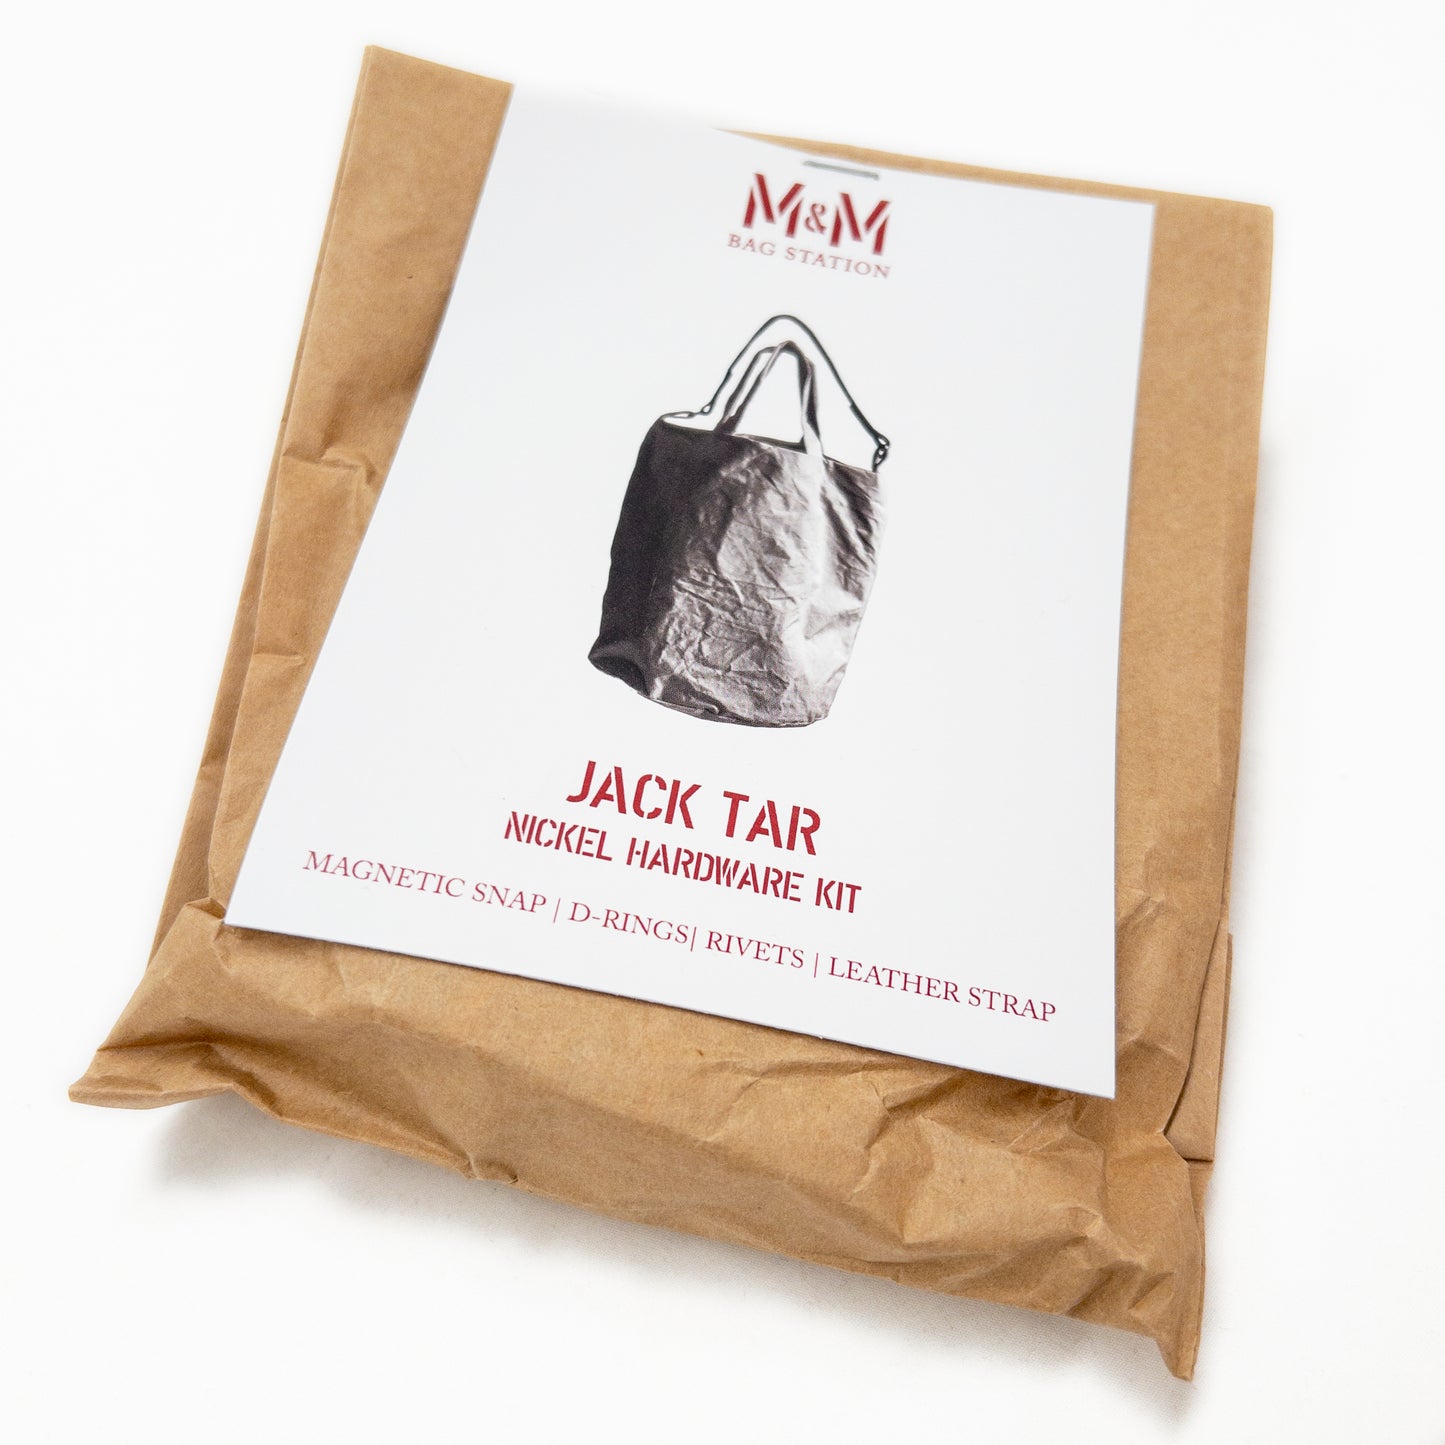 Jack Tar Hardware Kit